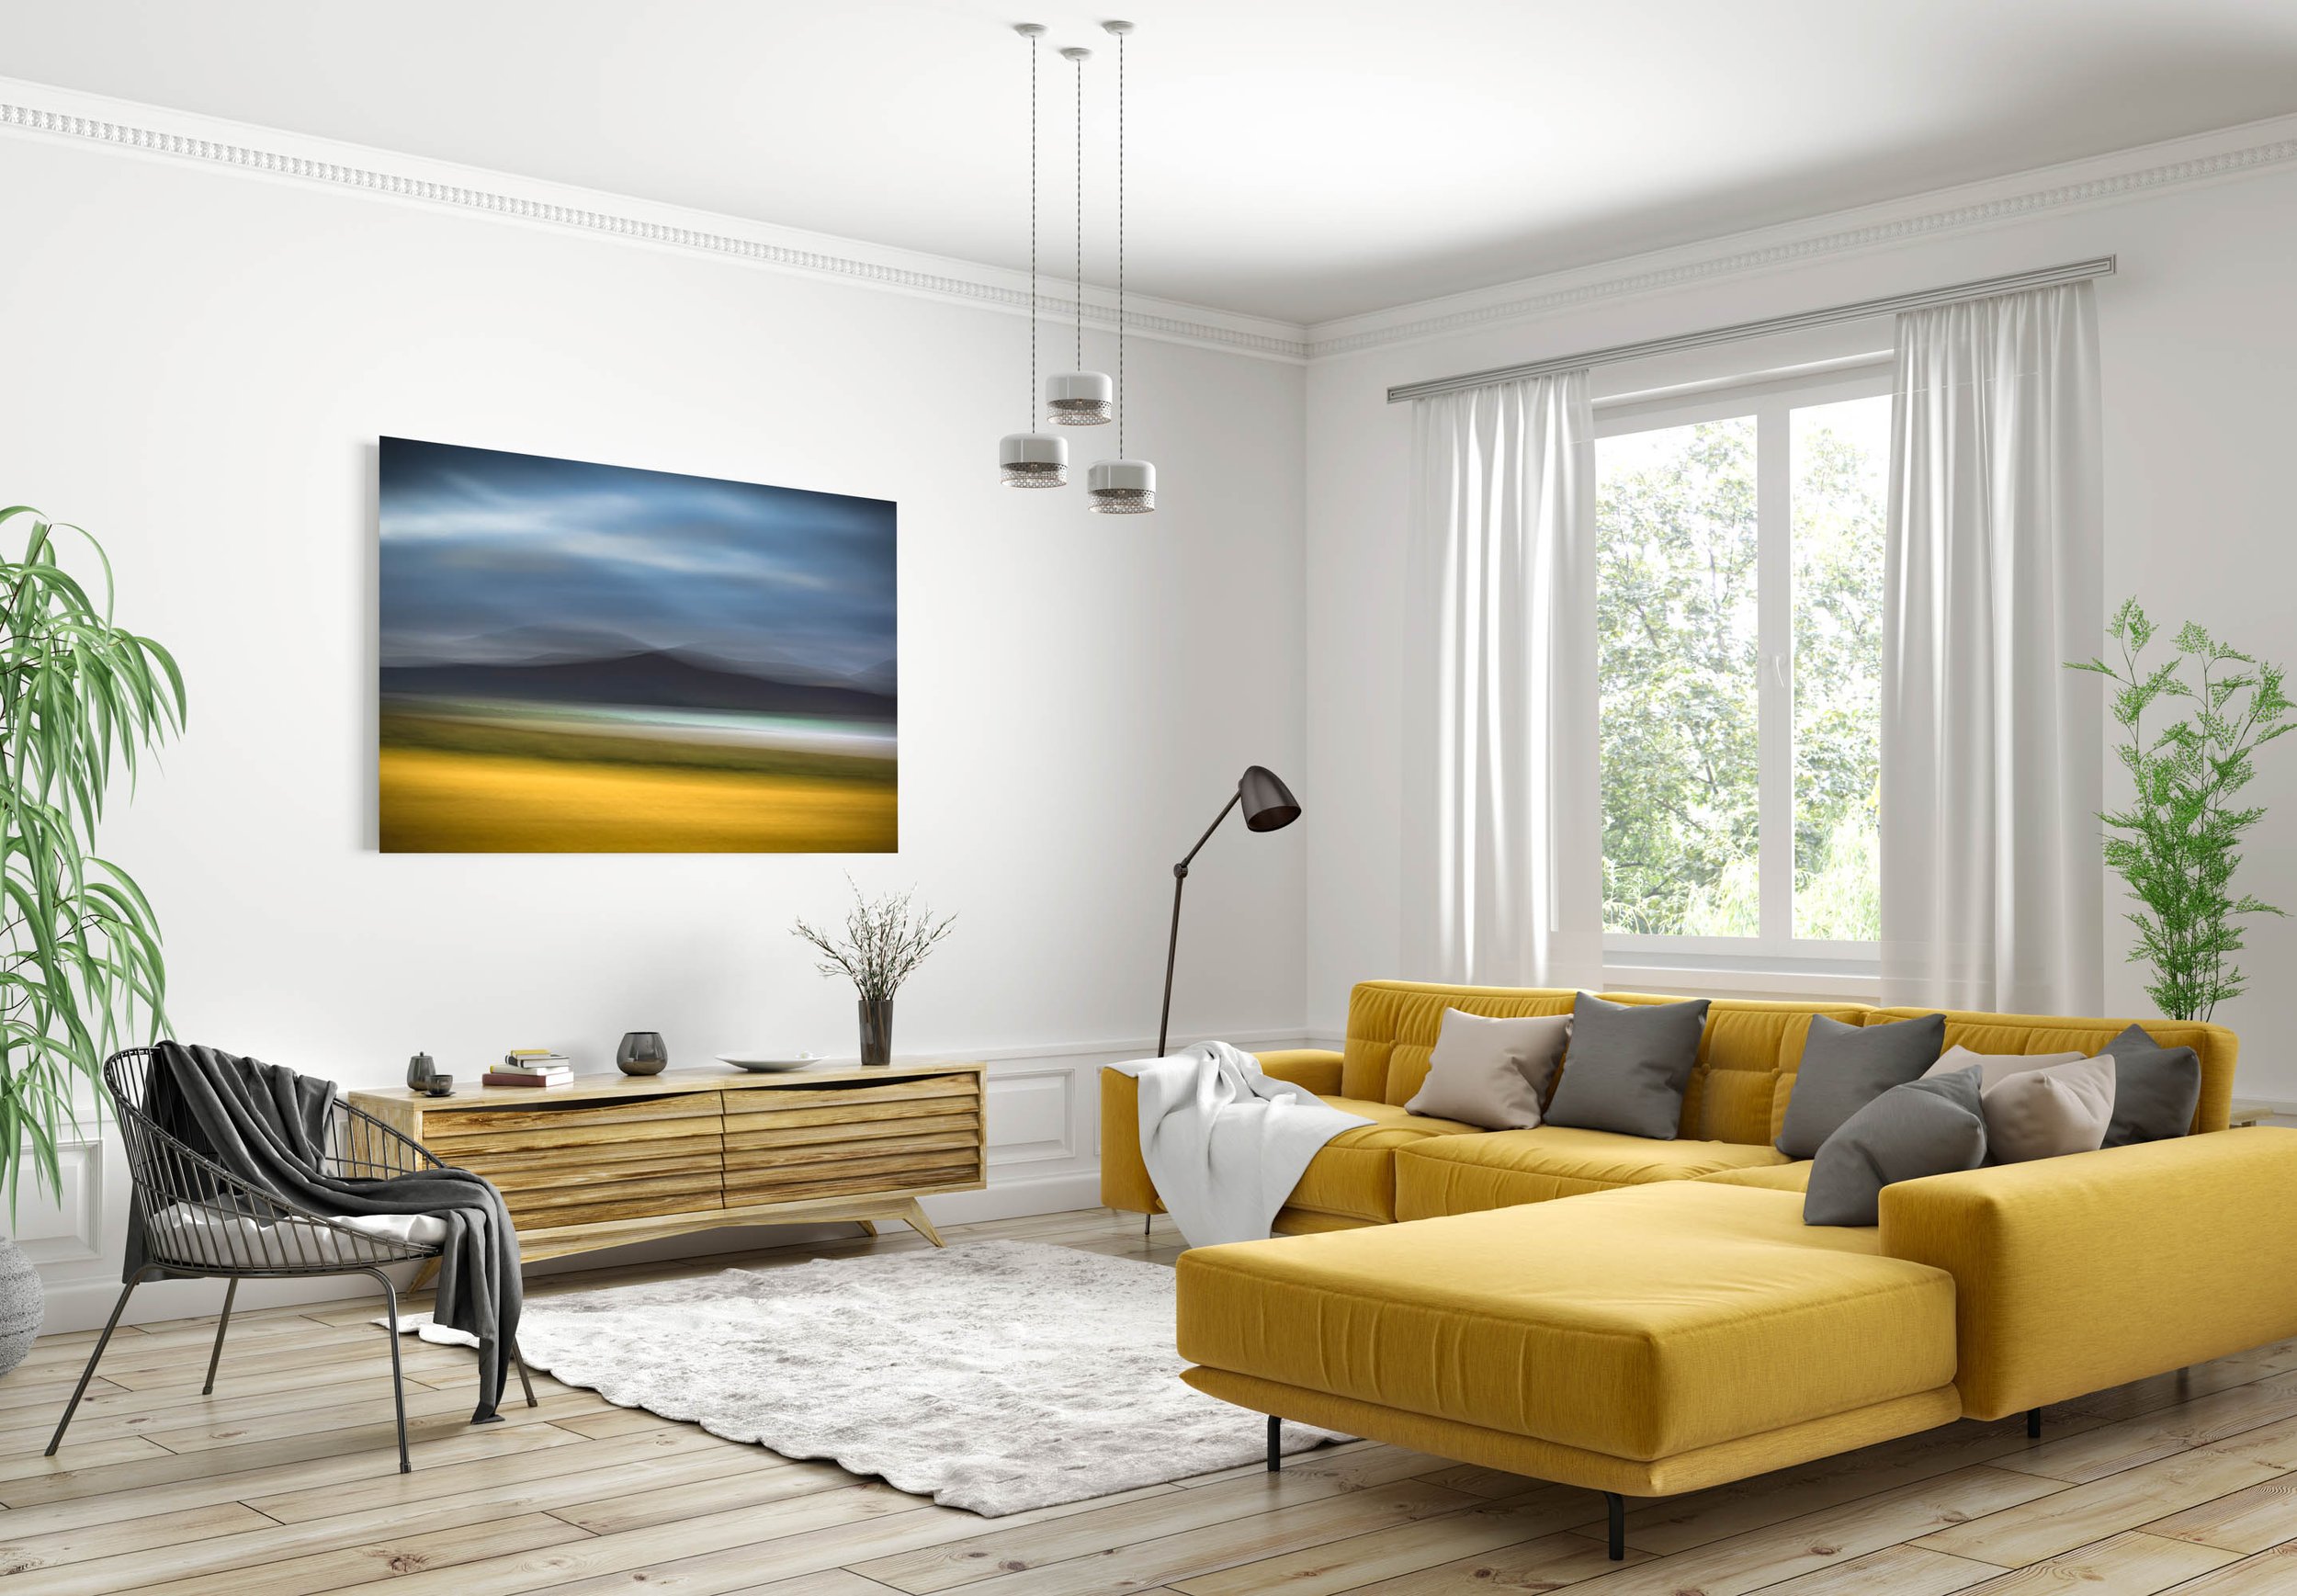 quadro grande em parede de sala com sofá amarelo